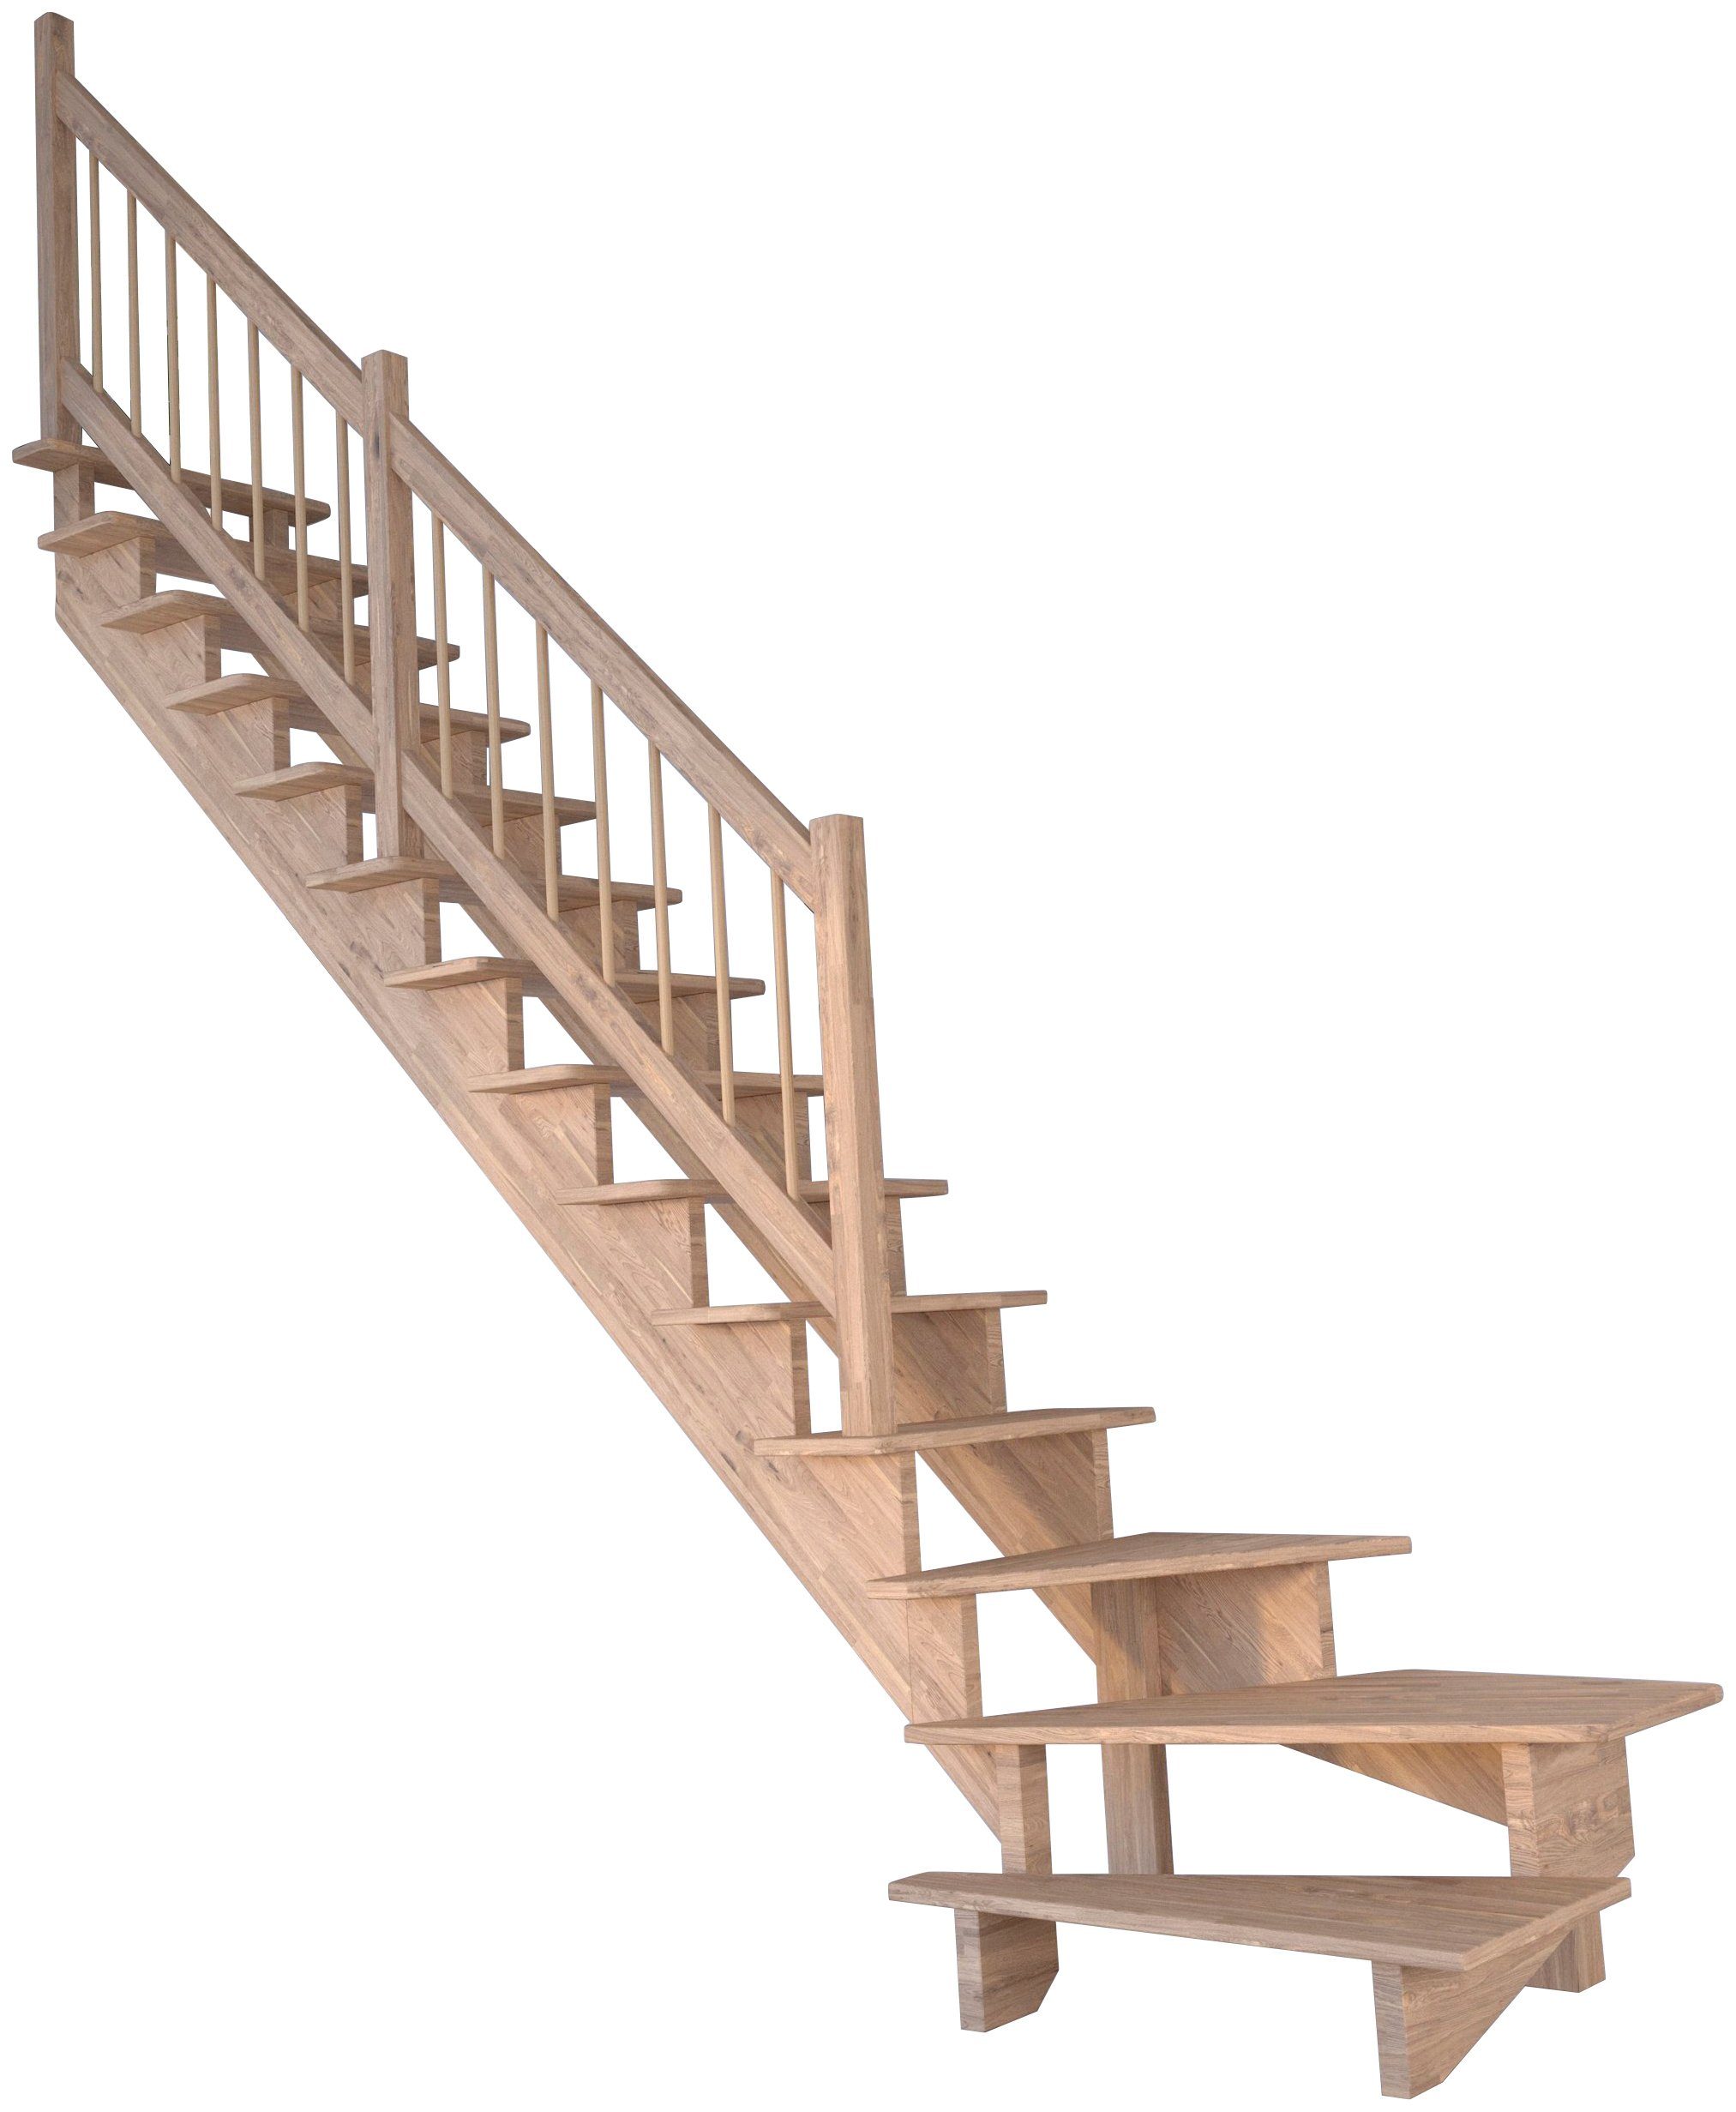 Starwood Systemtreppe Massivholz Lindos, Holz-Holz Design Geländer, für Geschosshöhen bis 300 cm, Stufen offen, gewendelt Links, Durchgehende Wangenteile